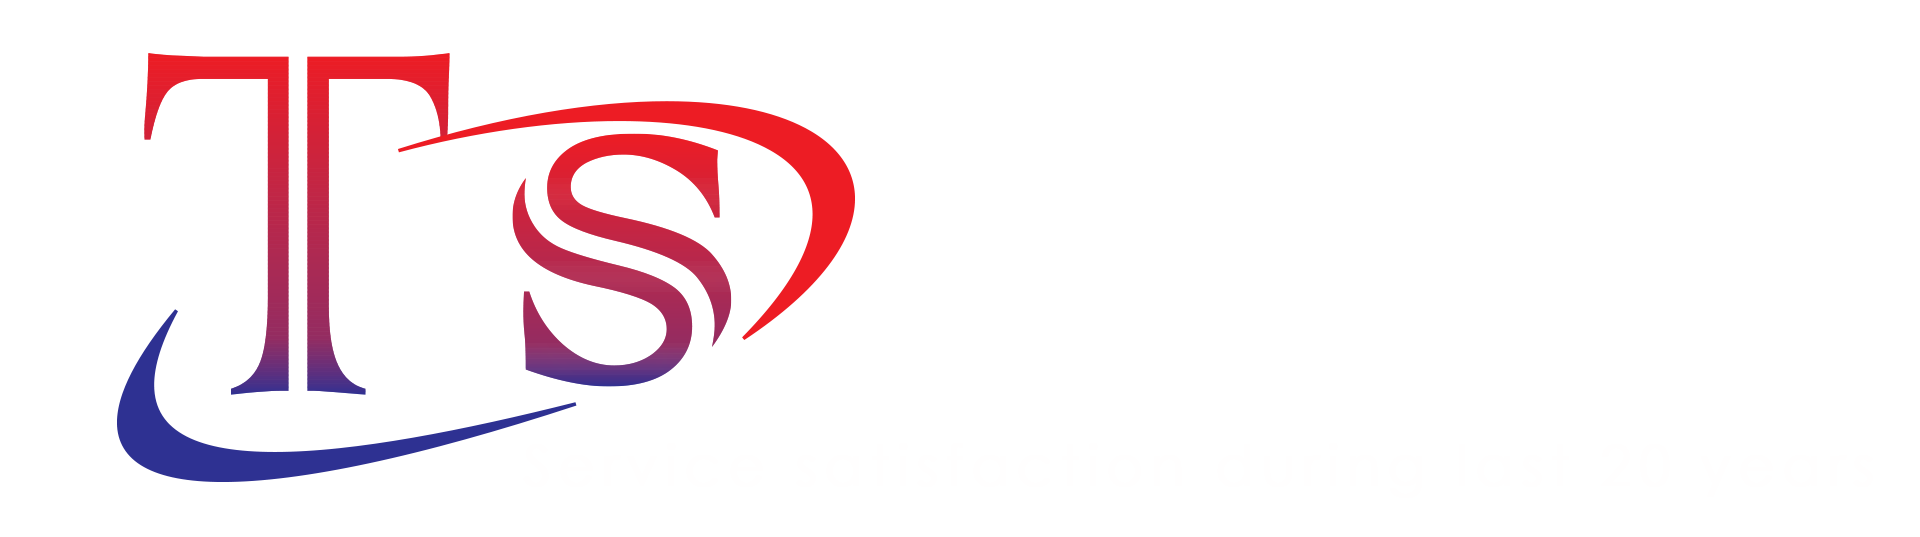 Home - T&S Fuel Distributors